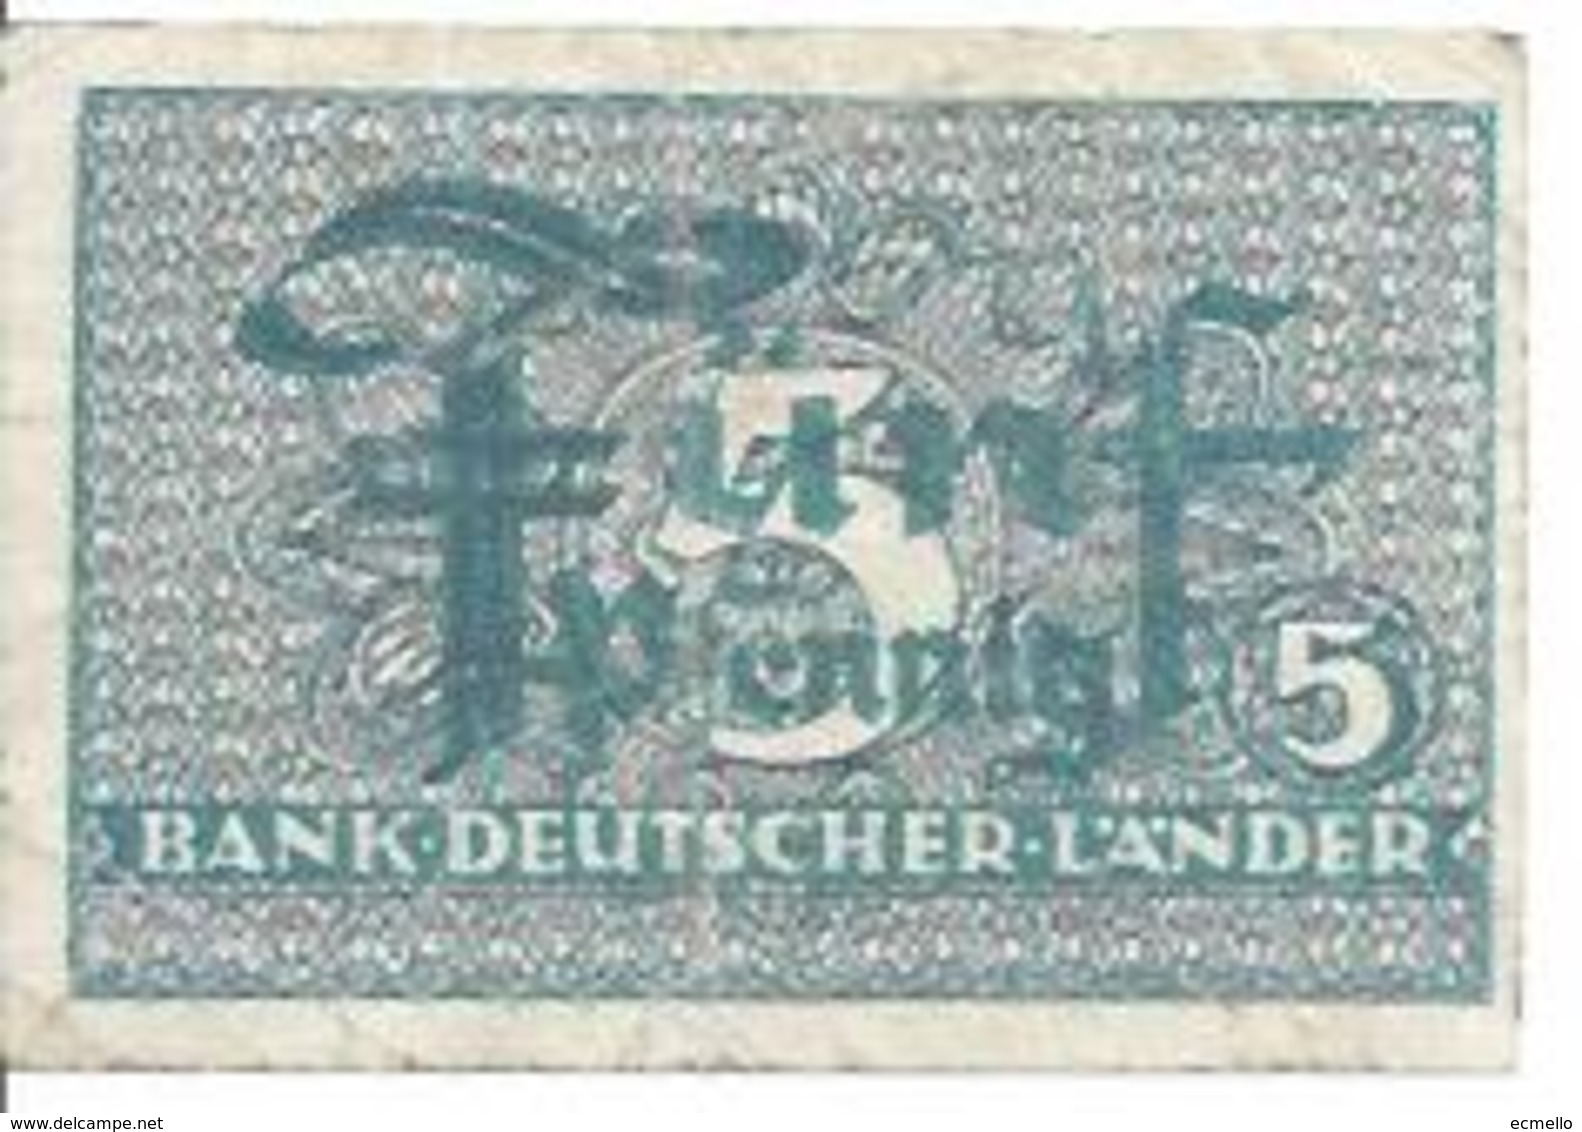 GERMANY FED. REP.  P11 5 PFENNIG 1948 VF BANK DEUTSCHE LANDER - 5 Pfennig